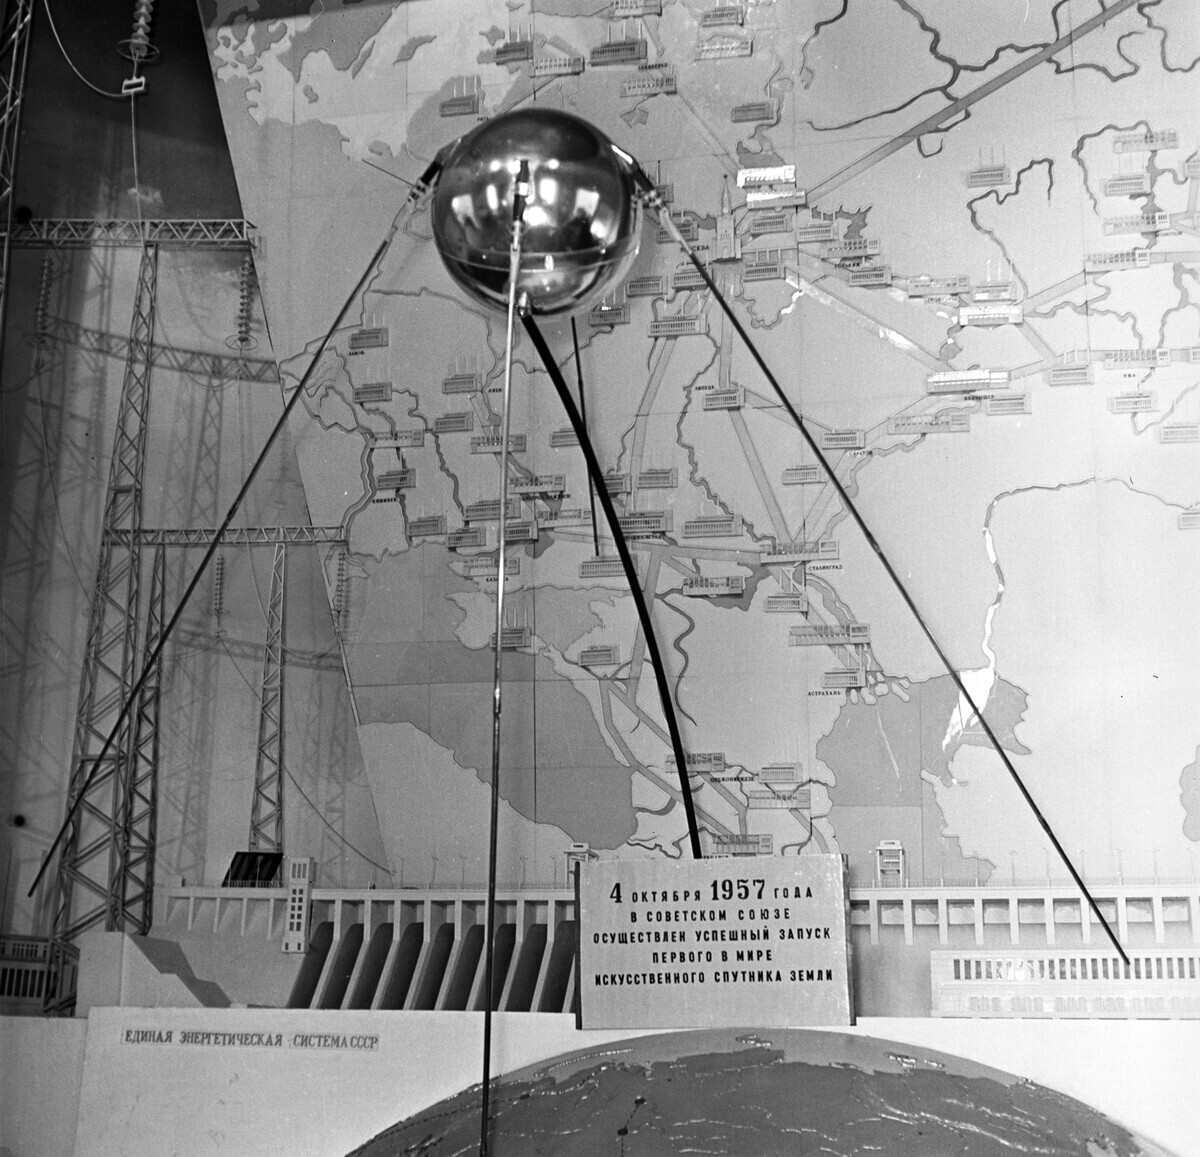 Modelo do primeiro satélite soviético, na Exposição Agrícola de Toda União Soviética, em Moscou.